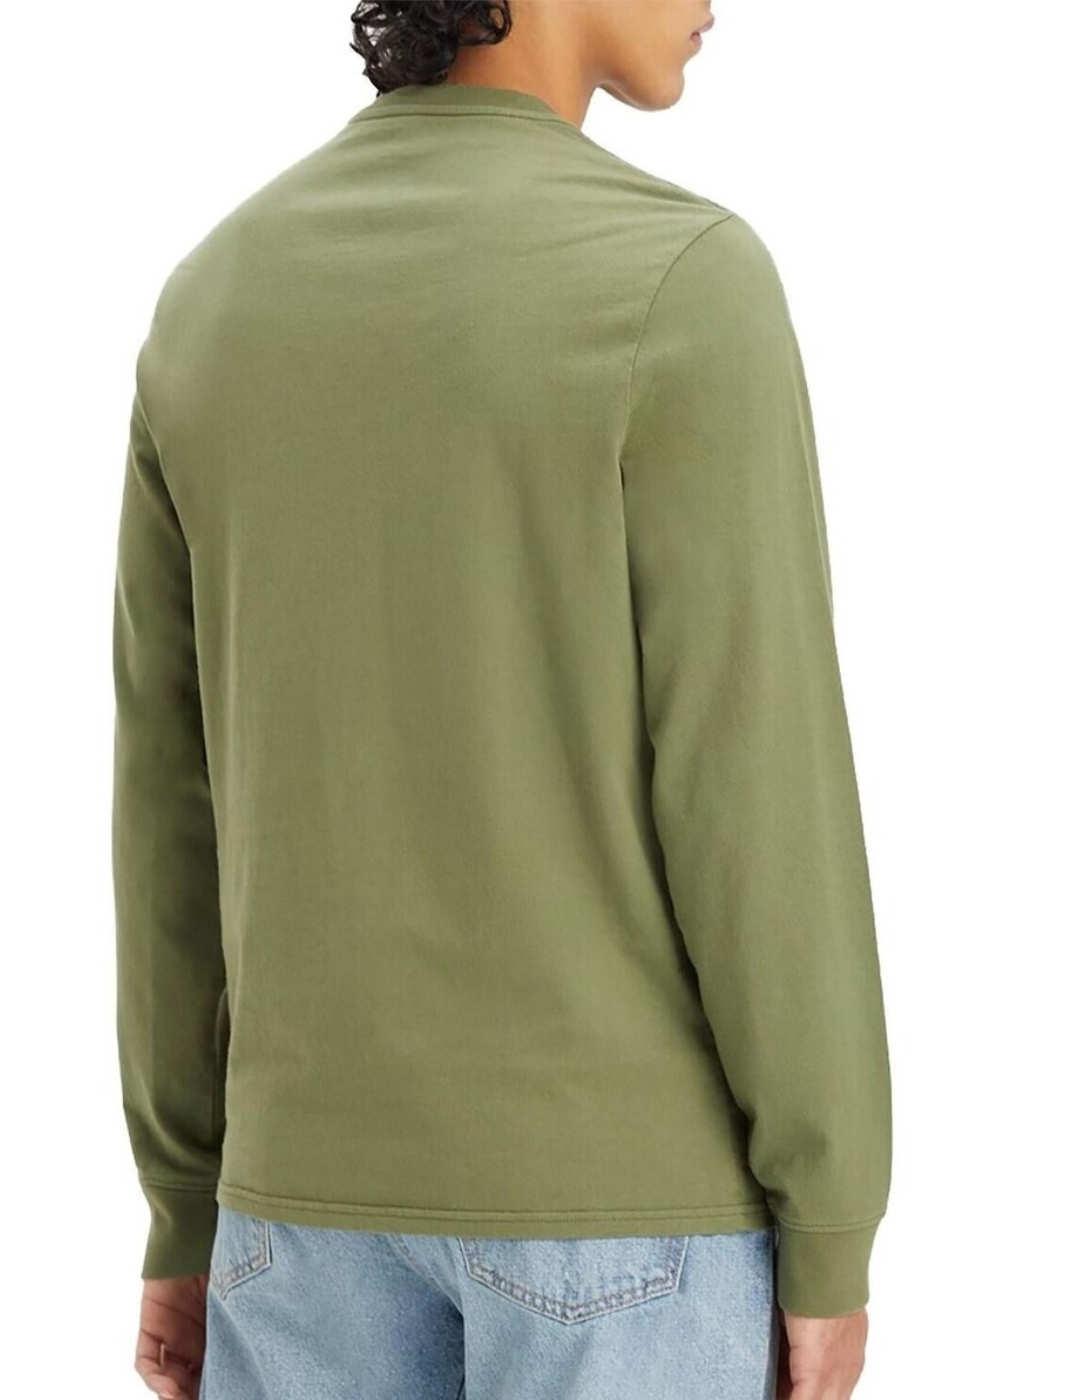 Camiseta Levi's verde de logo bordado manga larga de hombre